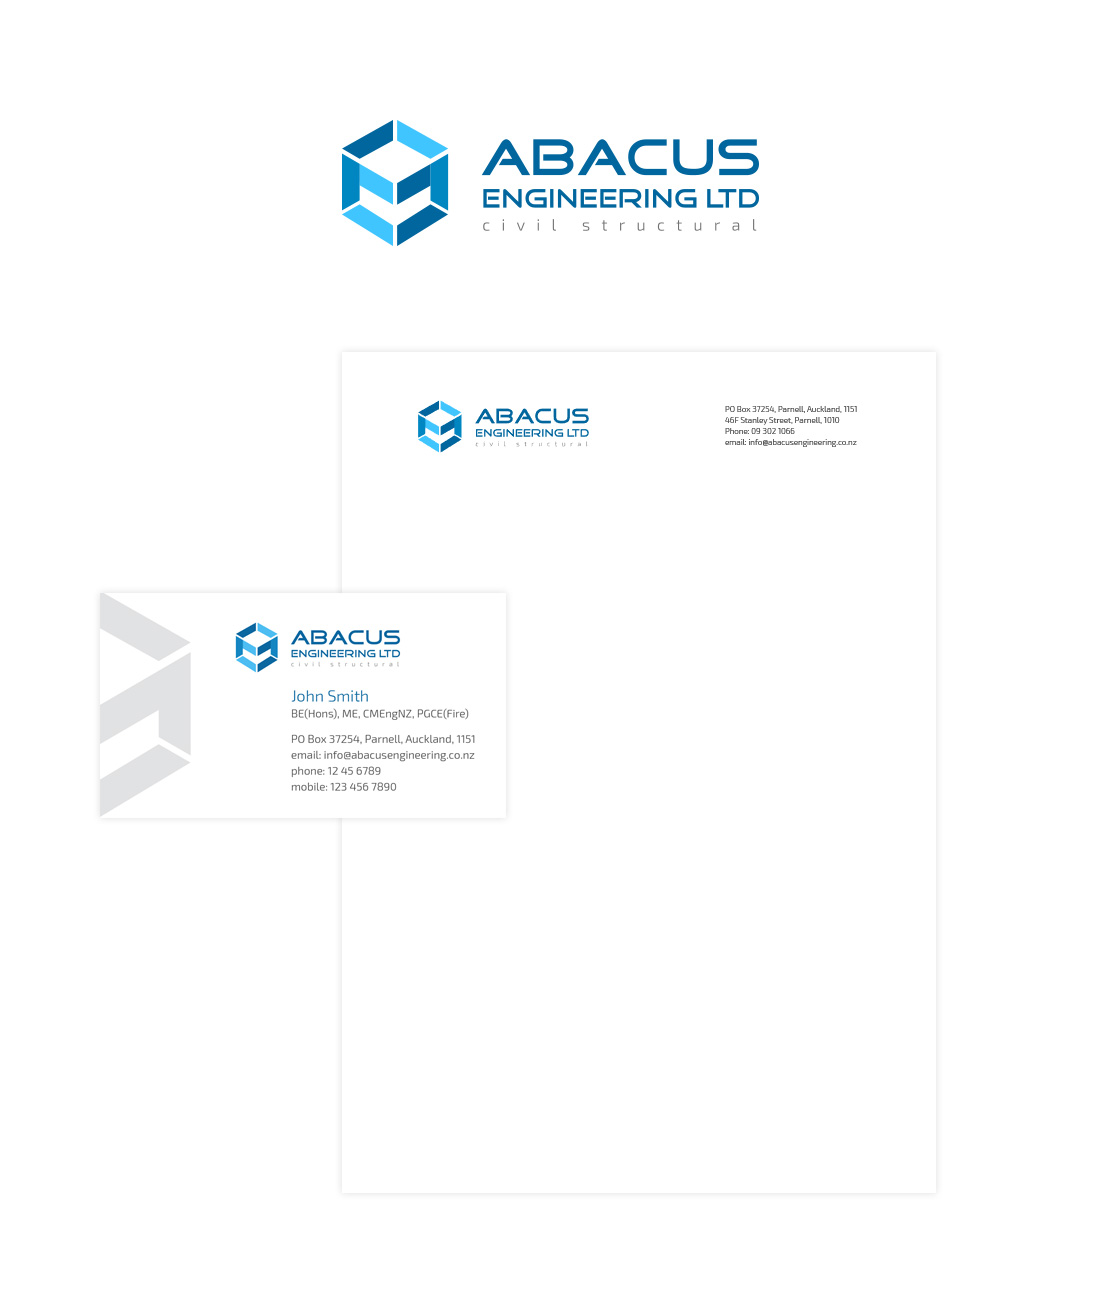 Дизайн логотипа и фирменного стиля для компании Abacus